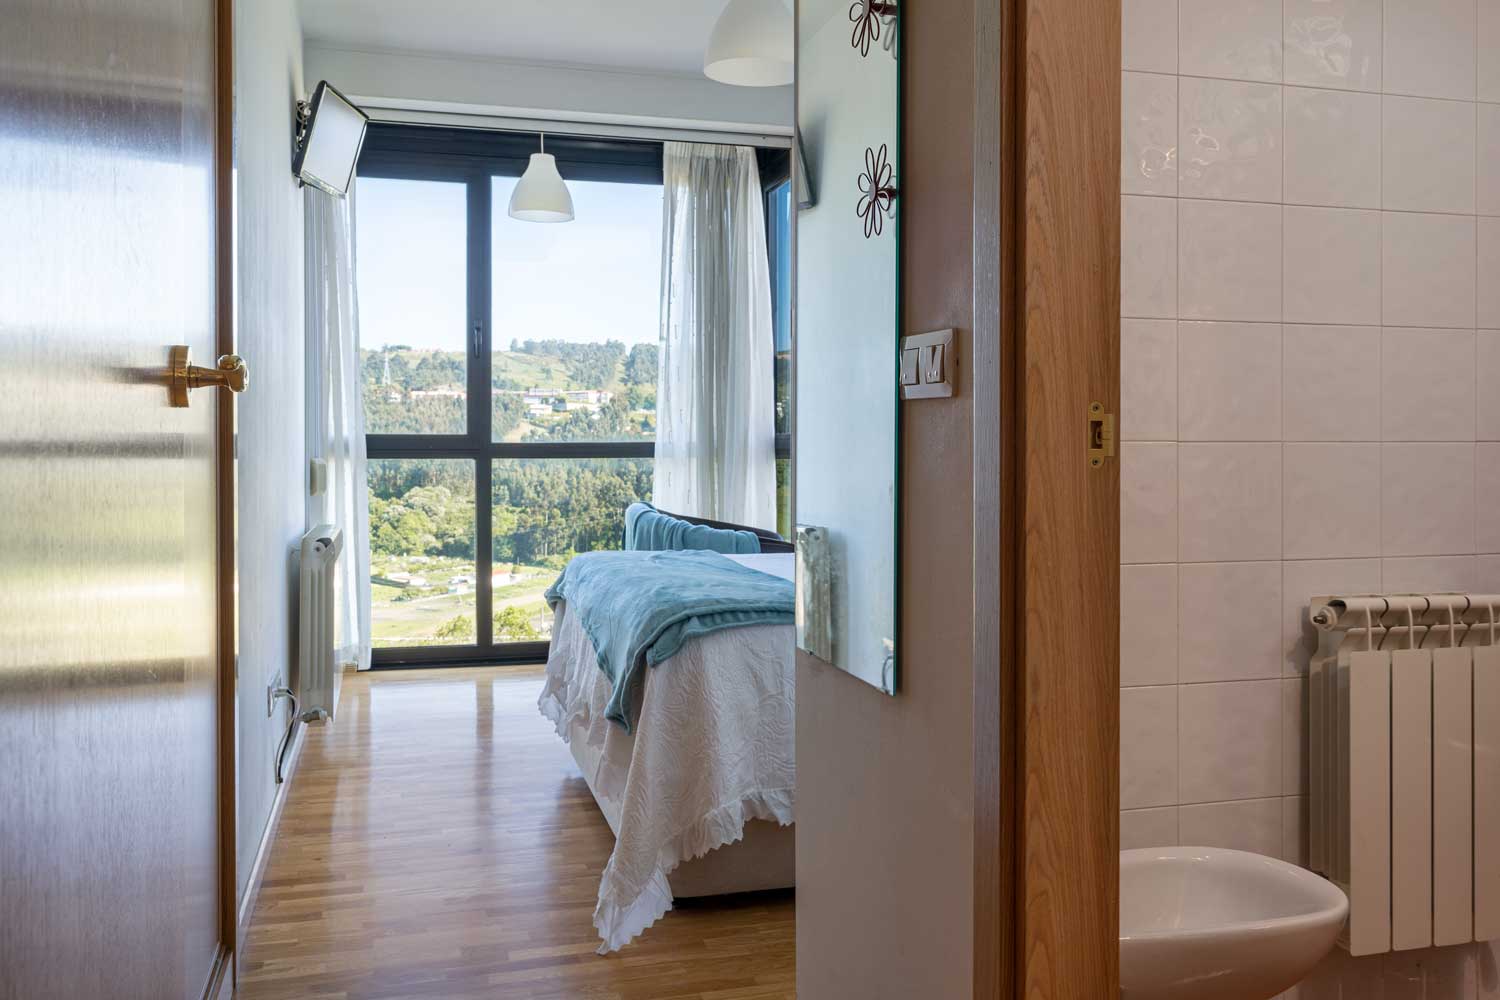 Dormitorio doble con baño en suite_ Textiles neutros y azules para home staging_ gran ventanal con vistas a paisaje